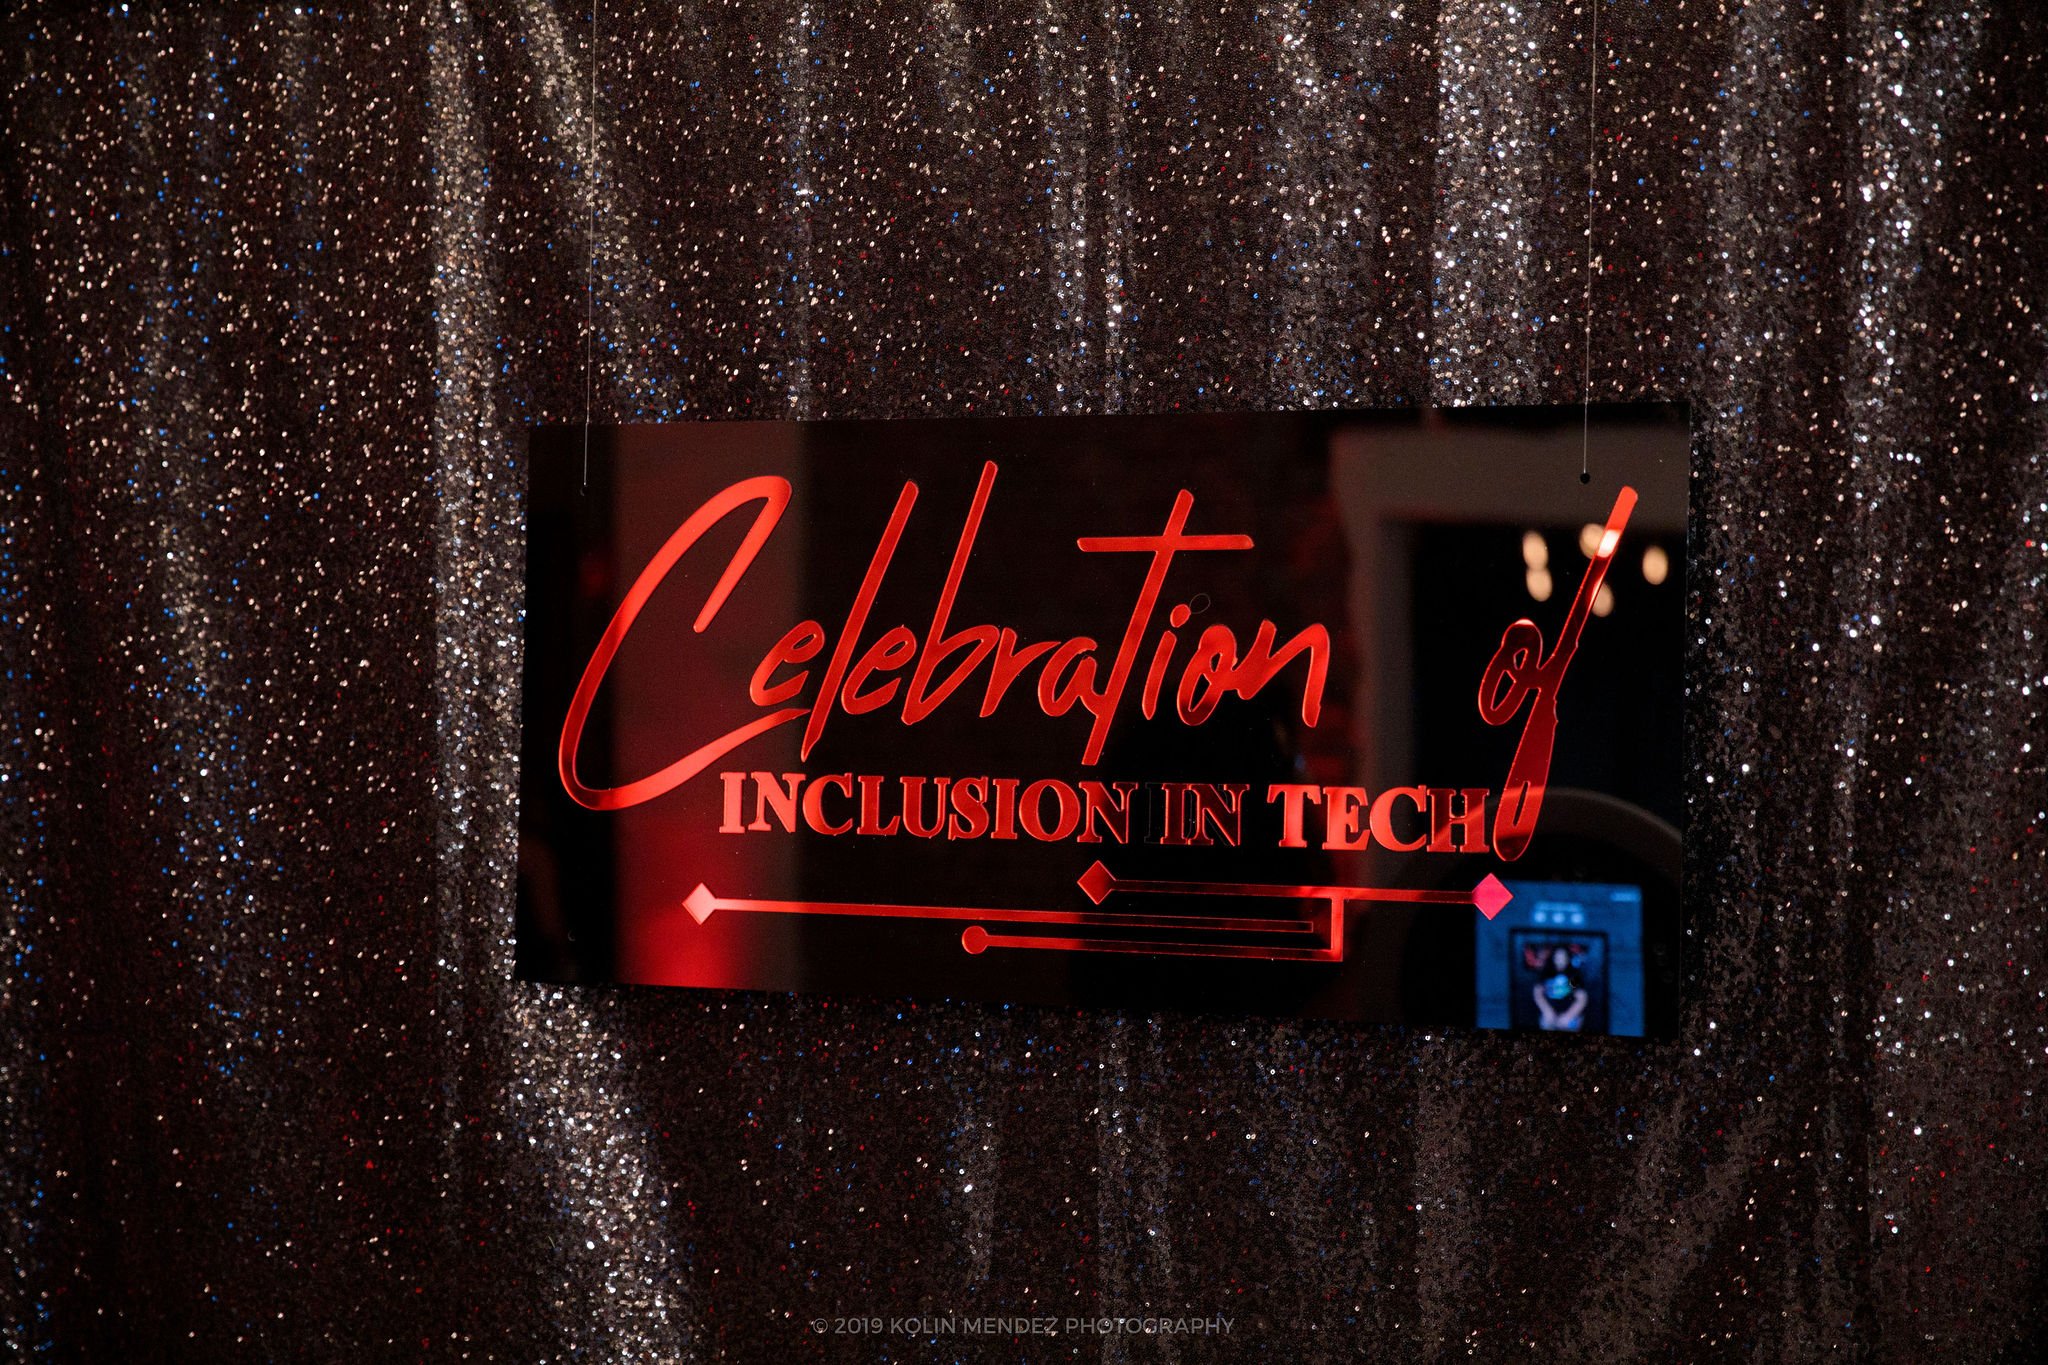 Google Celebration of Inclusion in Tech  | Talia Felicia Events + Design